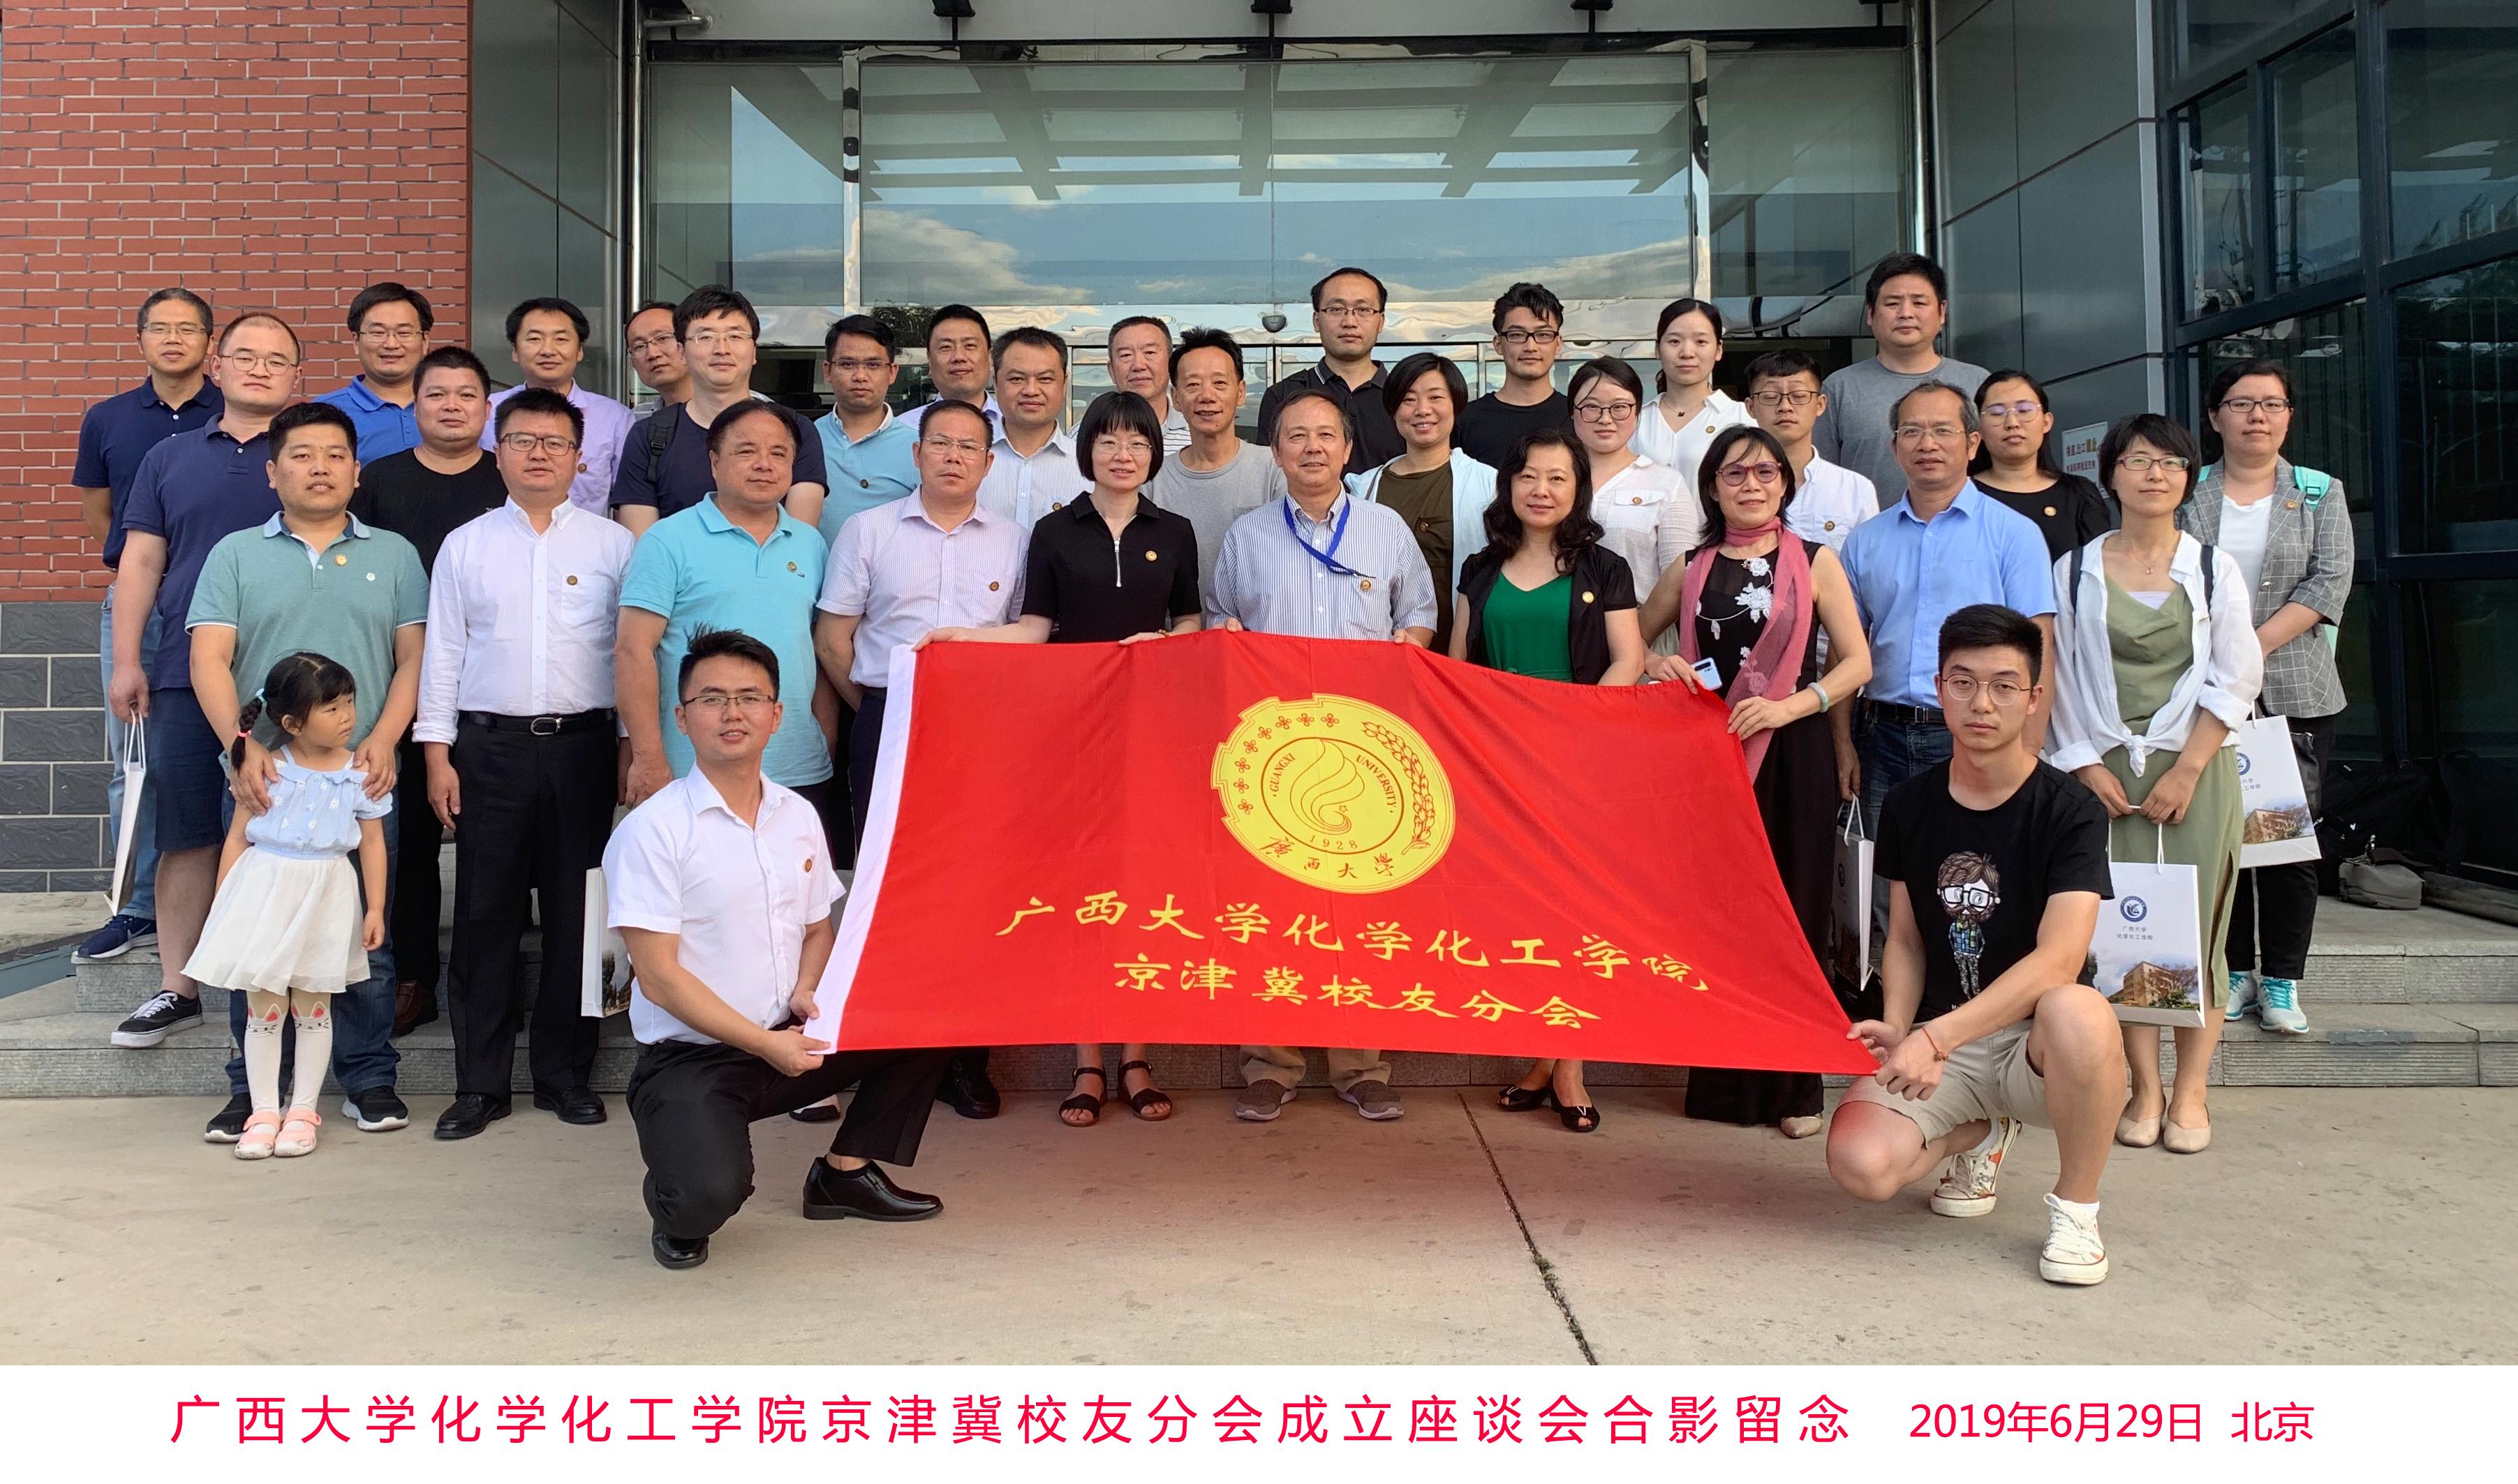 广西大学化学化工学院京津冀校友分会在北京成立